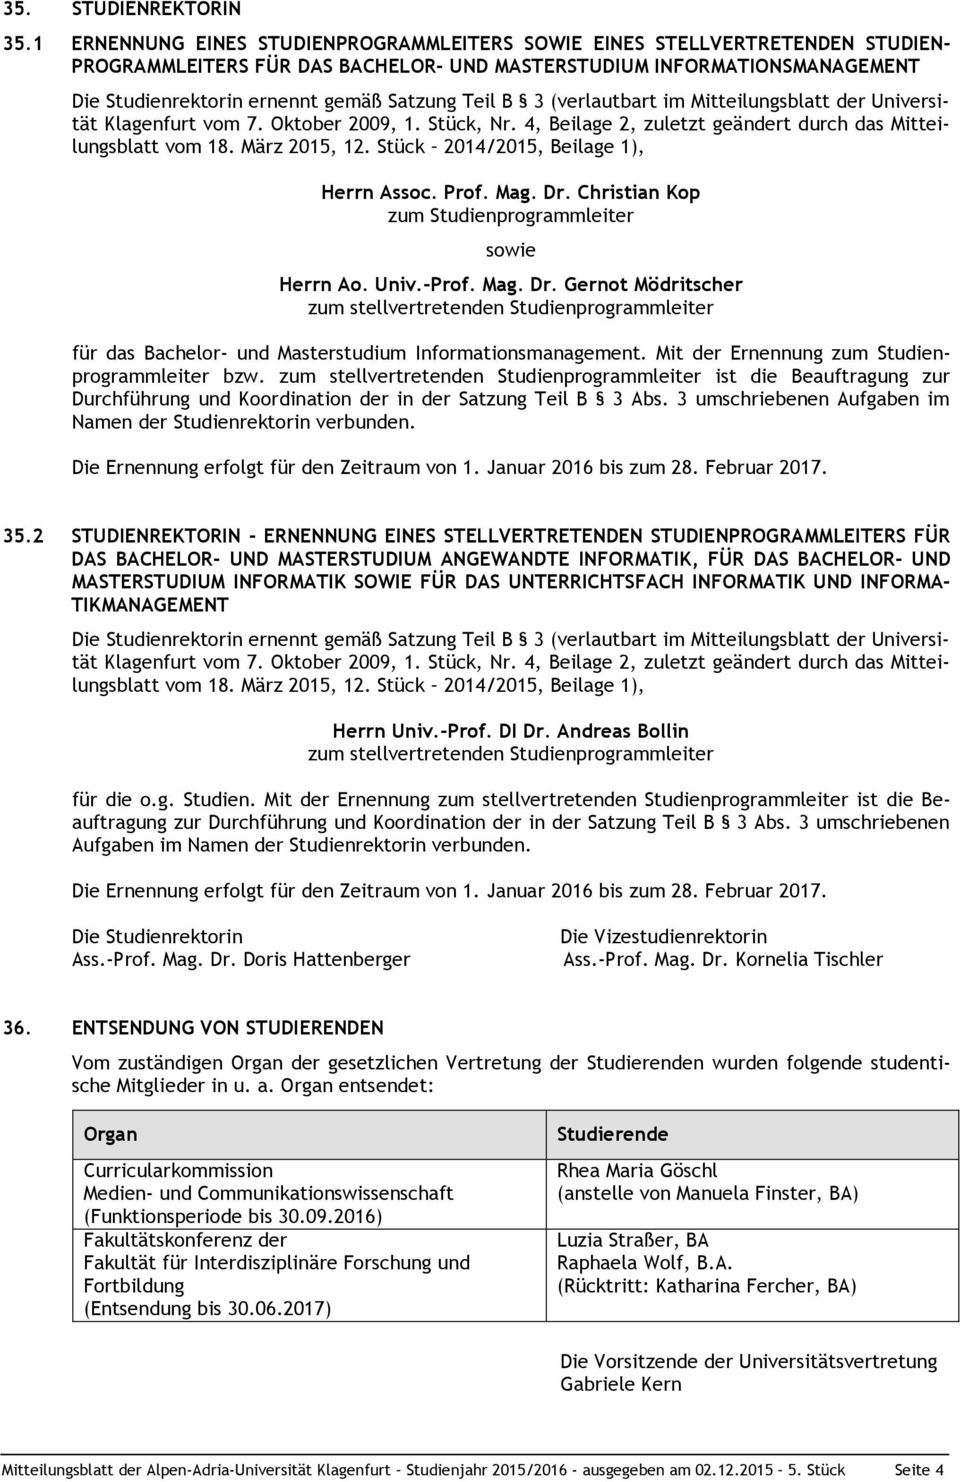 Teil B 3 (verlautbart im Mitteilungsblatt der Universität Klagenfurt vom 7. Oktober 2009, 1. Stück, Nr. 4, Beilage 2, zuletzt geändert durch das Mitteilungsblatt vom 18. März 2015, 12.